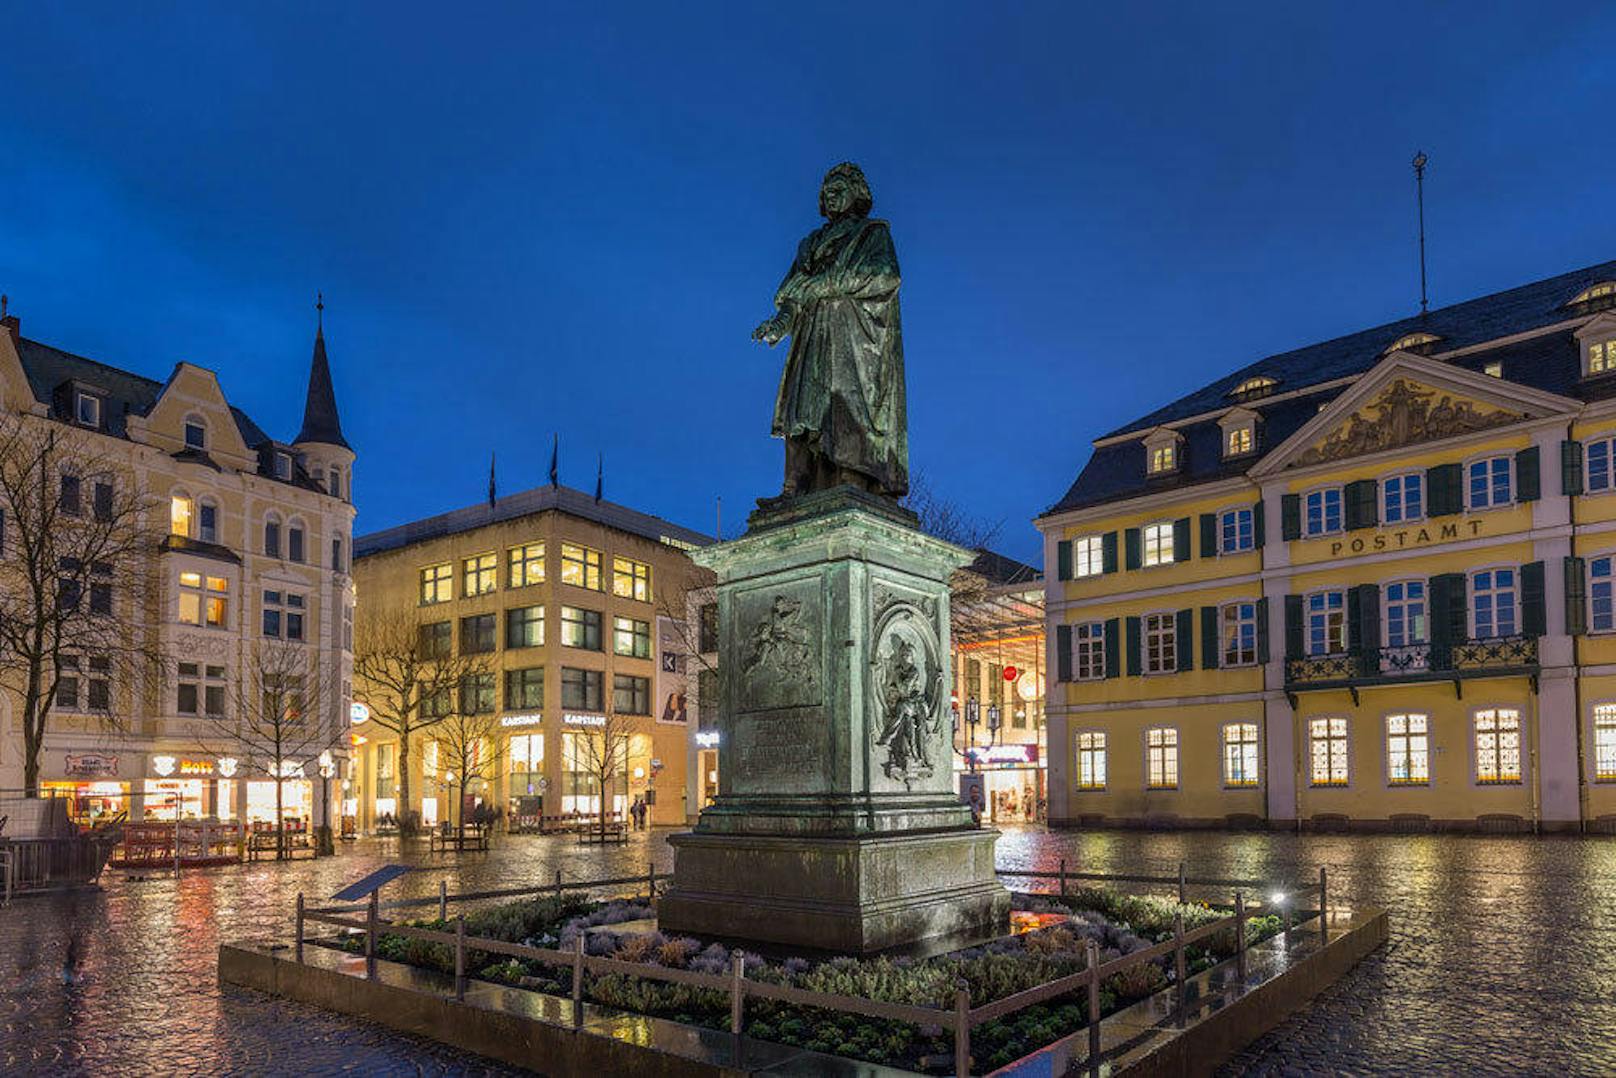 Gewinnen Sie Karten für das "Beethoven Festival 2017" in Baden!